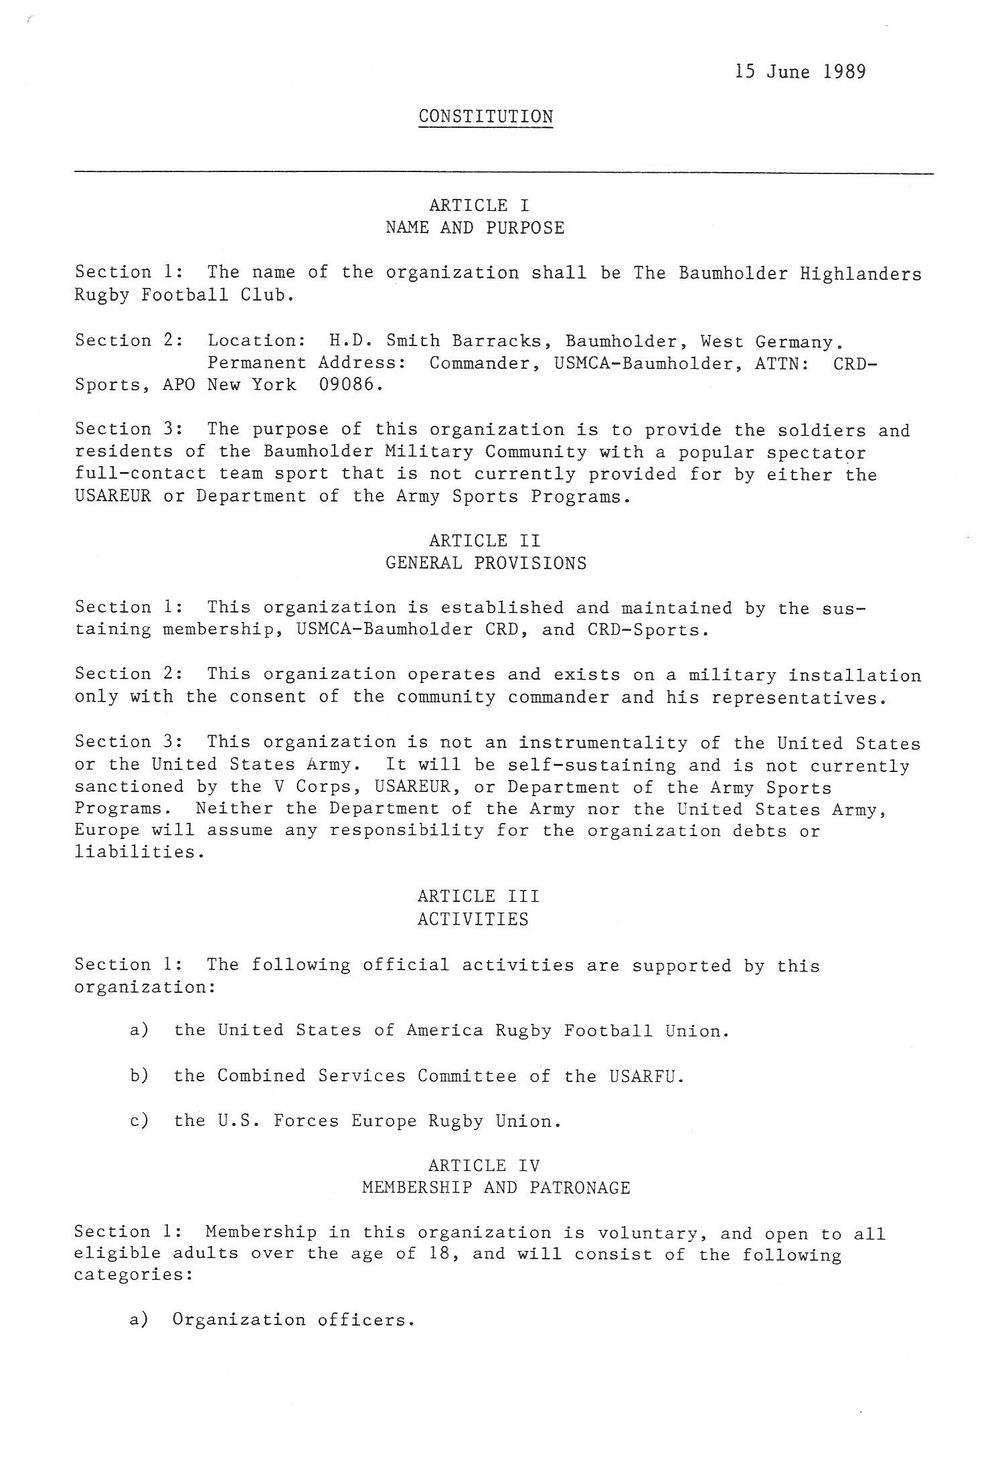 1989 Baumholder constitution 1.jpg